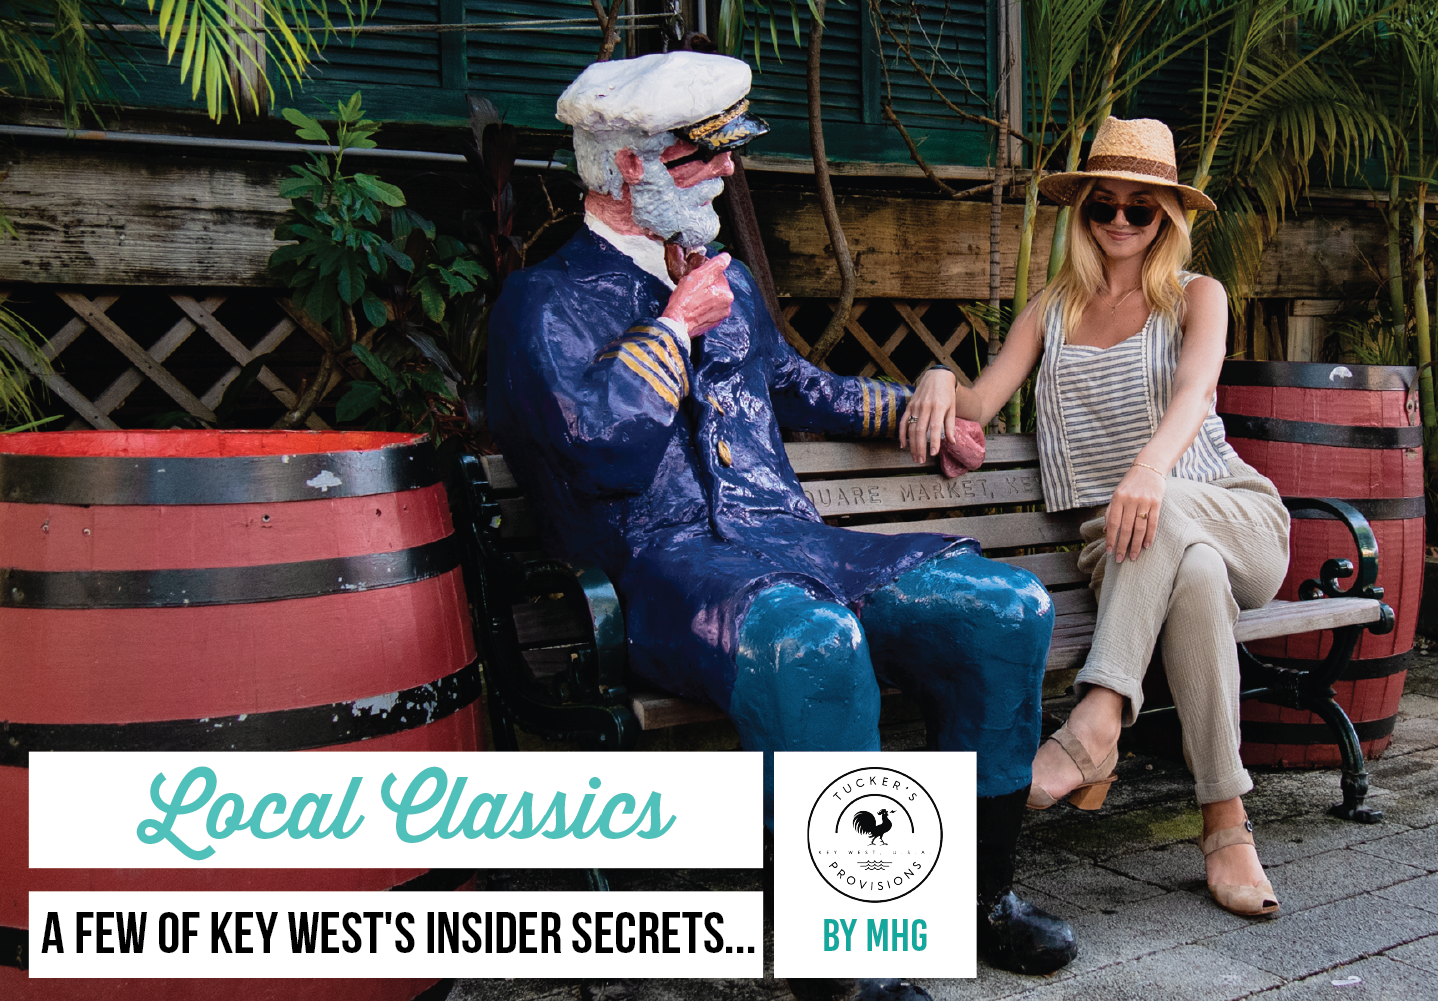 LOCAL CLASSICS – A few of Key West's insider secrets...